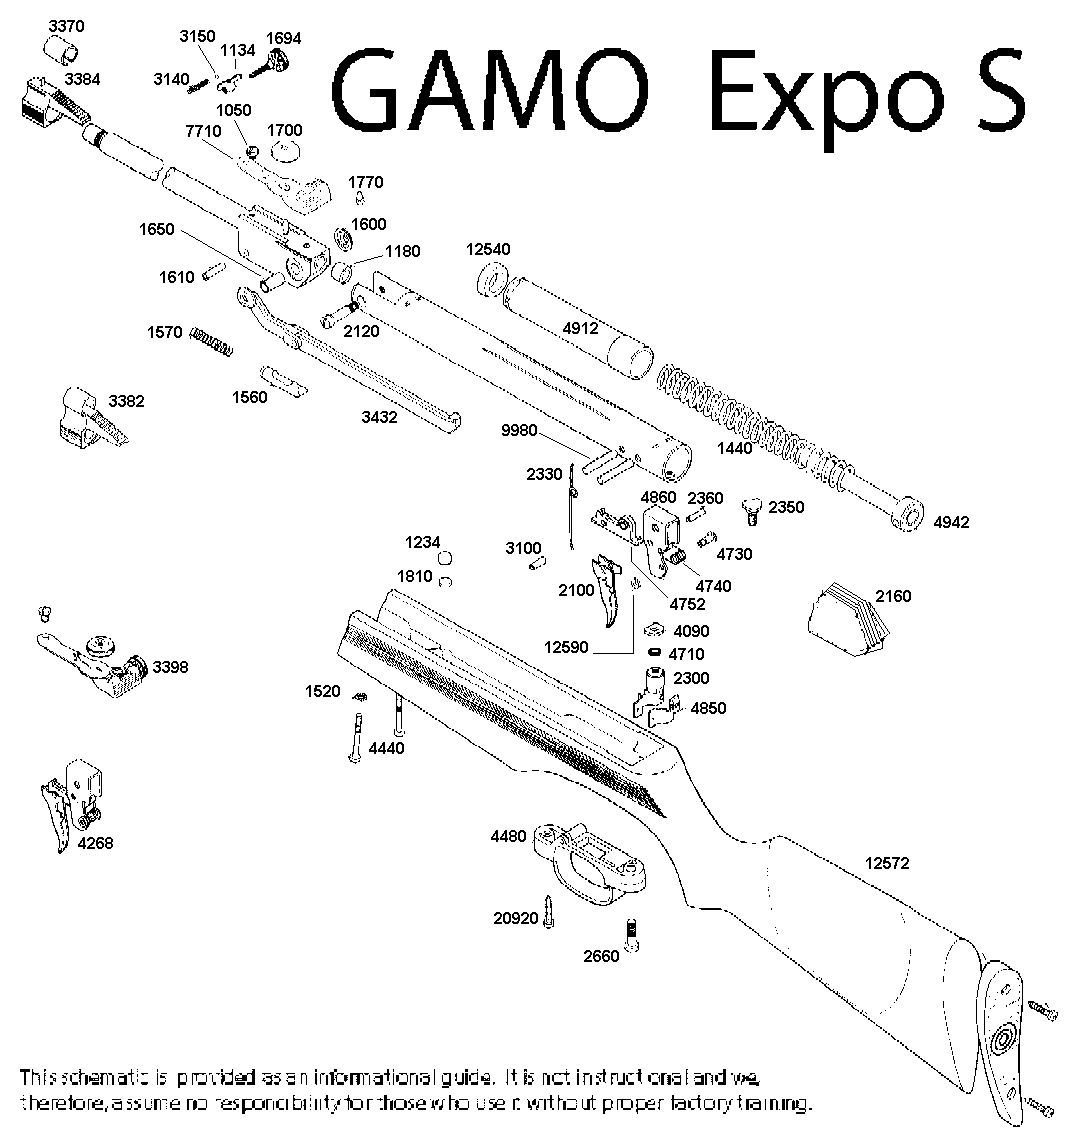 EXPO, EXPO 26, EXPO S Schematic